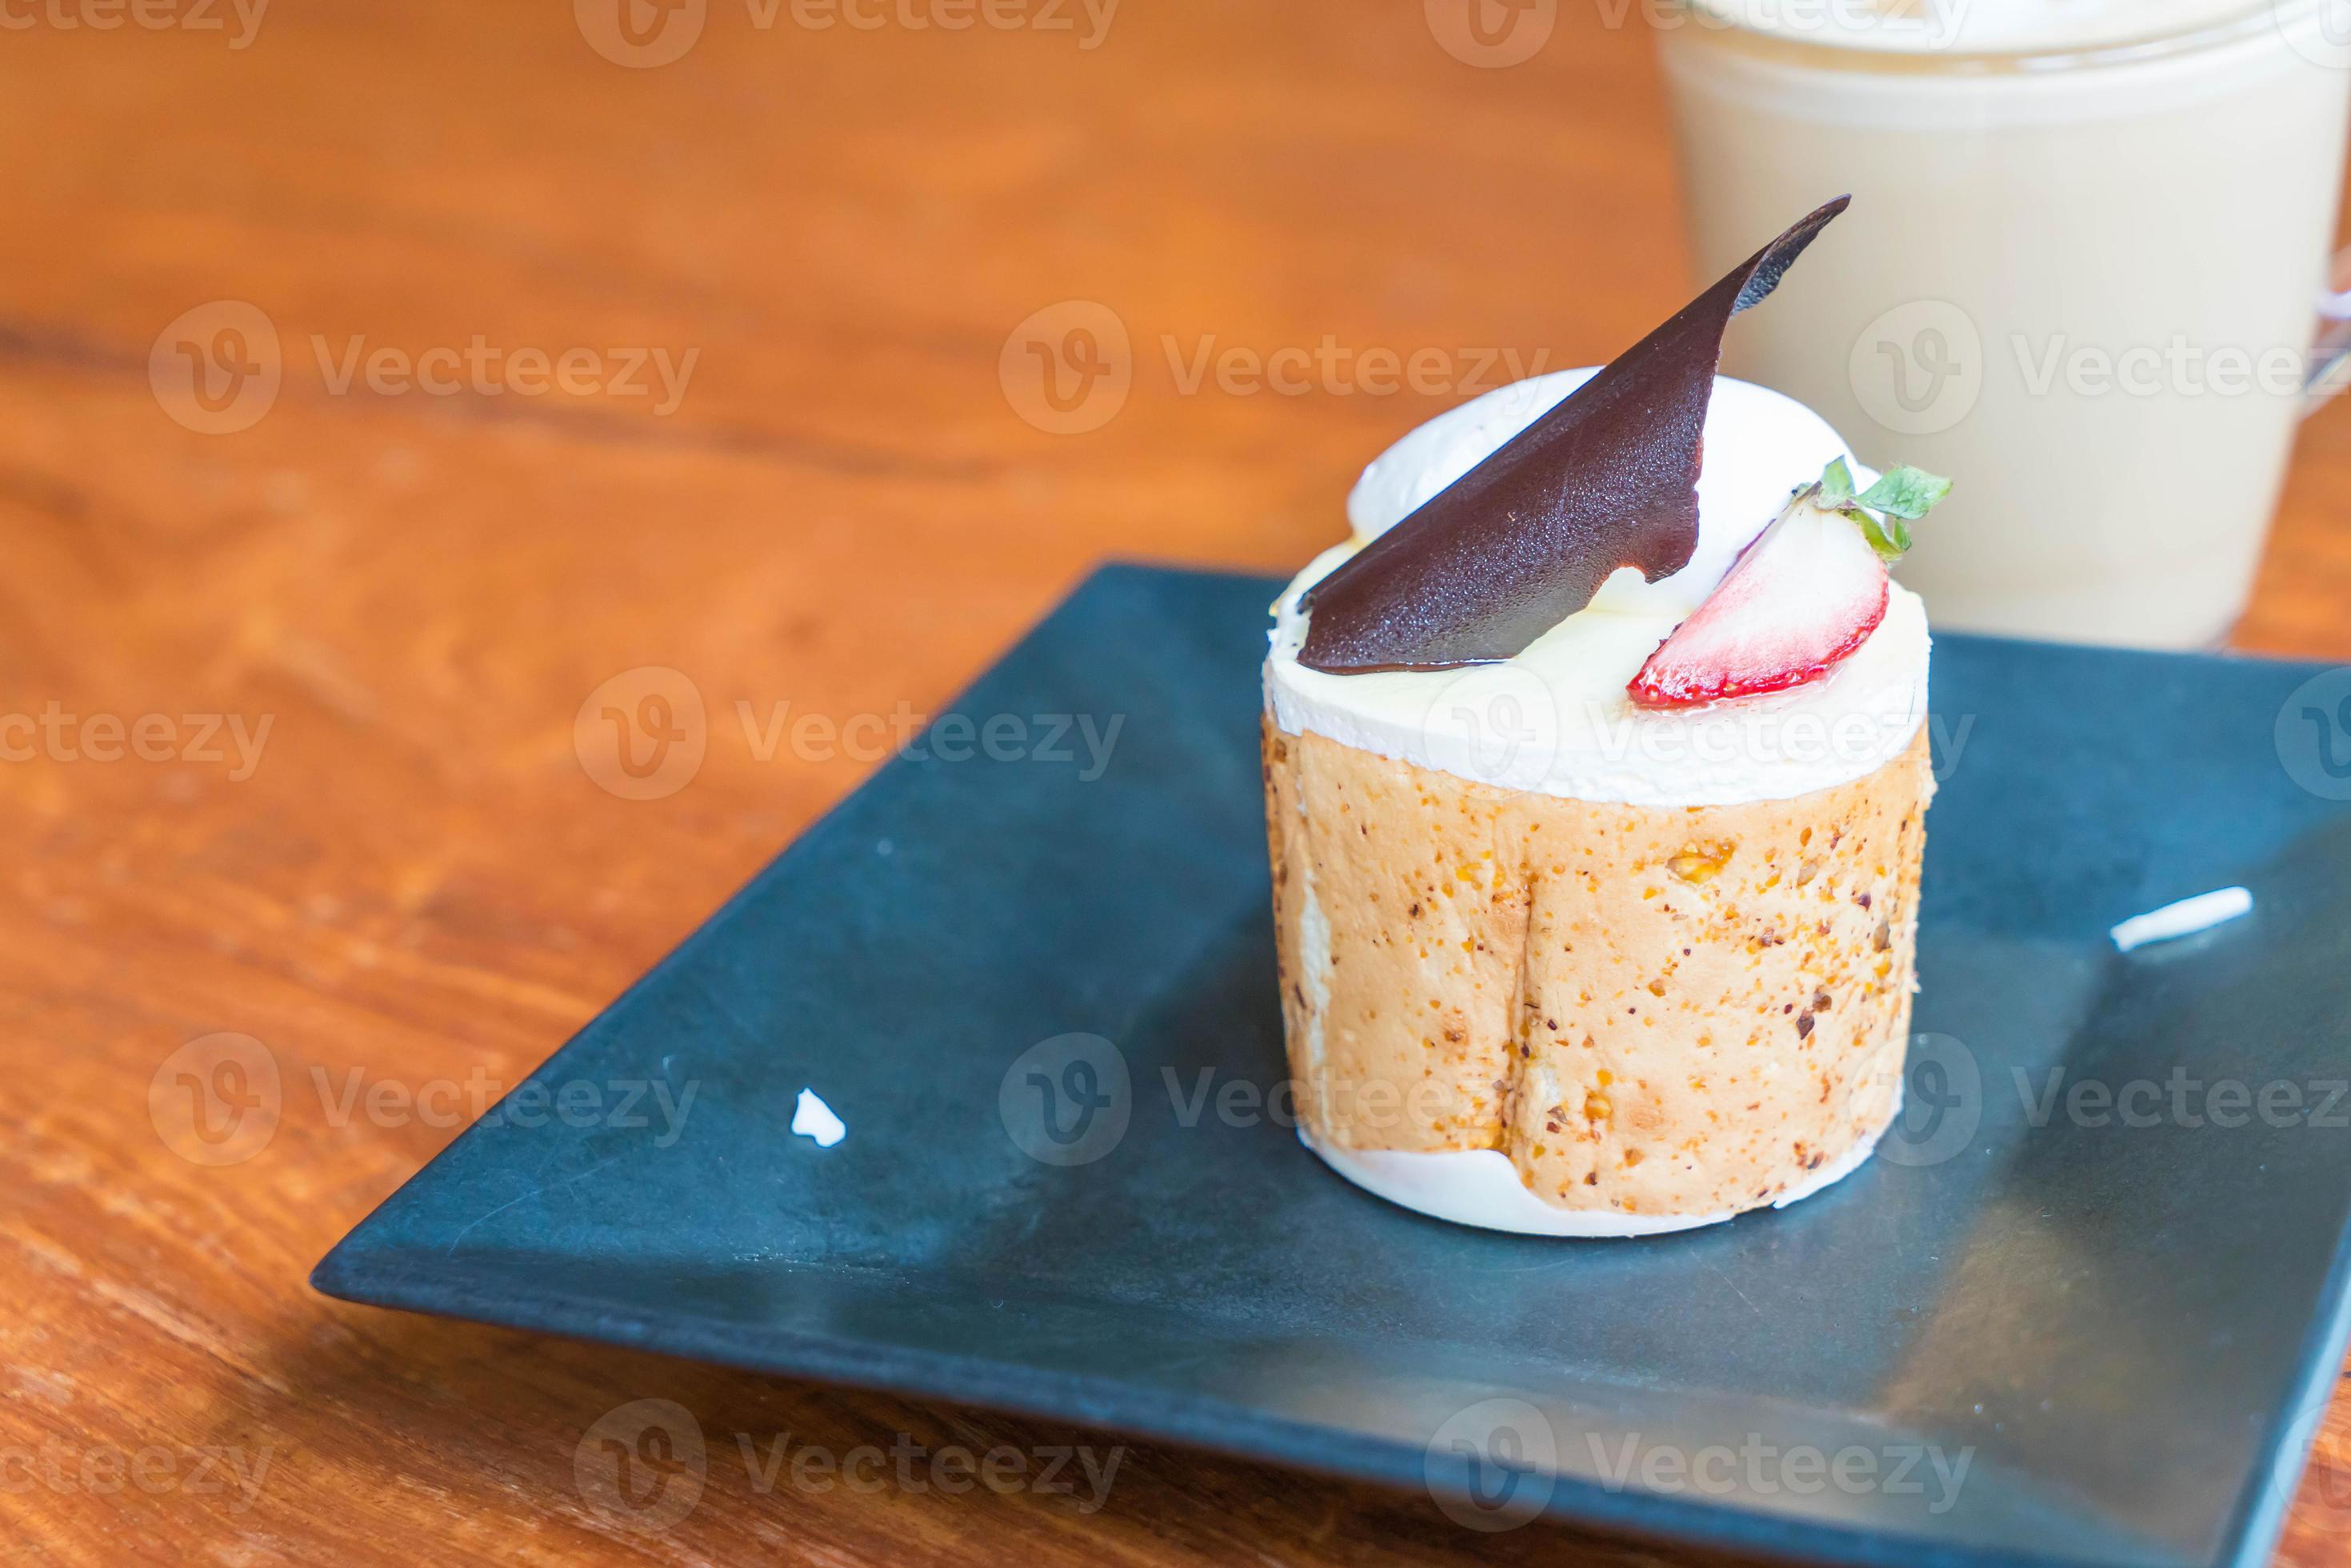 mango och passionsfrukt mousse tårta i café foto